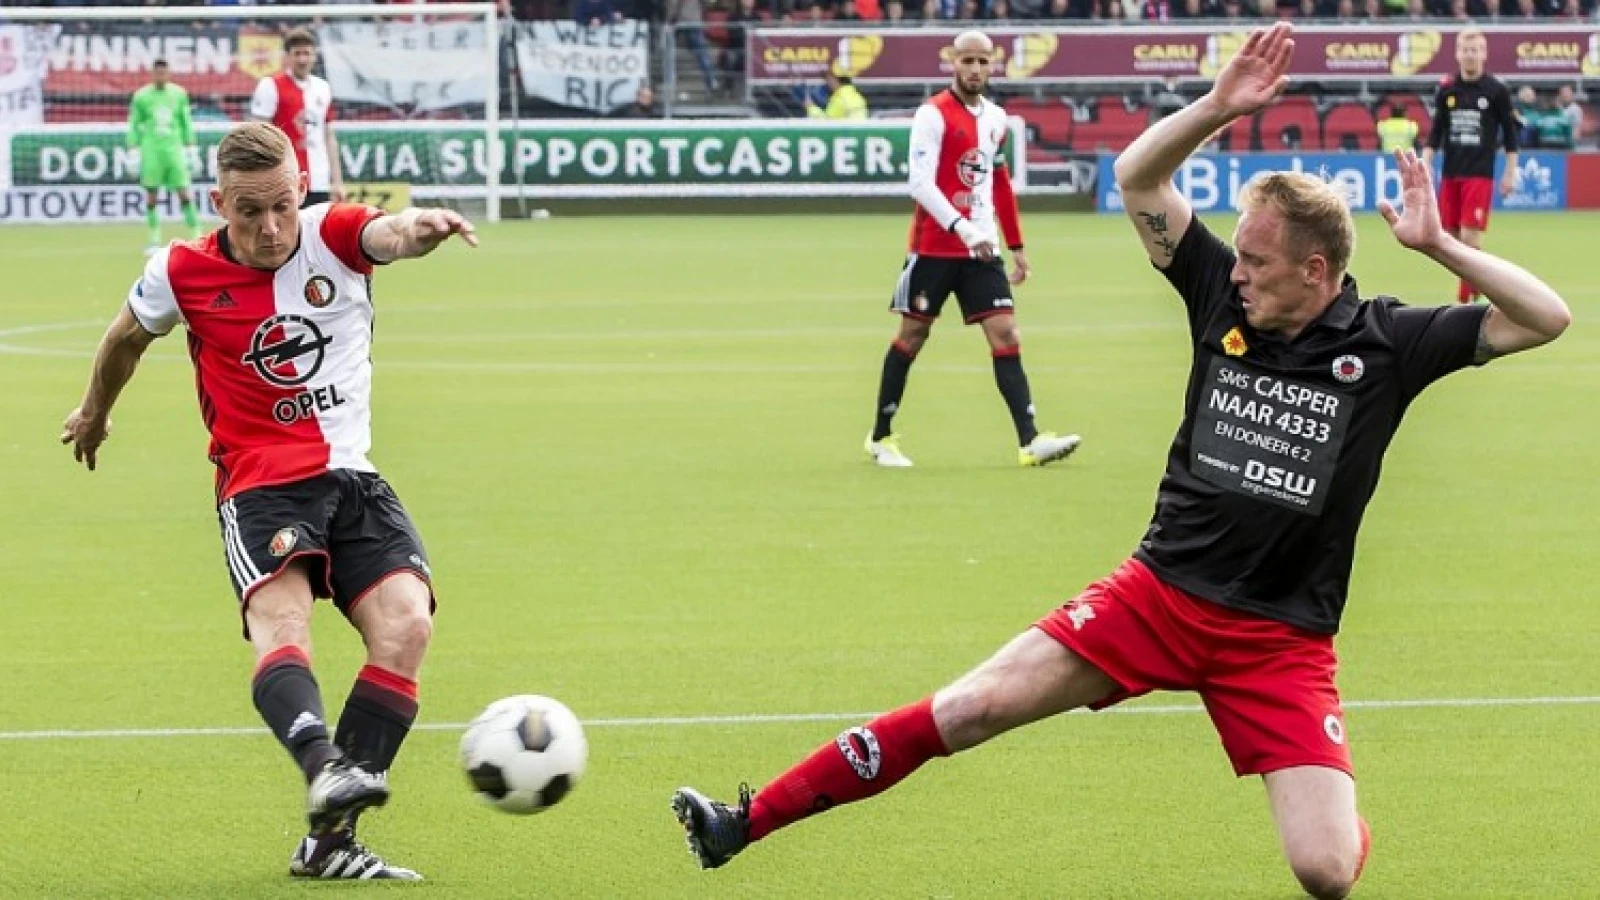 'In de Eredivisie speel je gewoon op echt gras' 